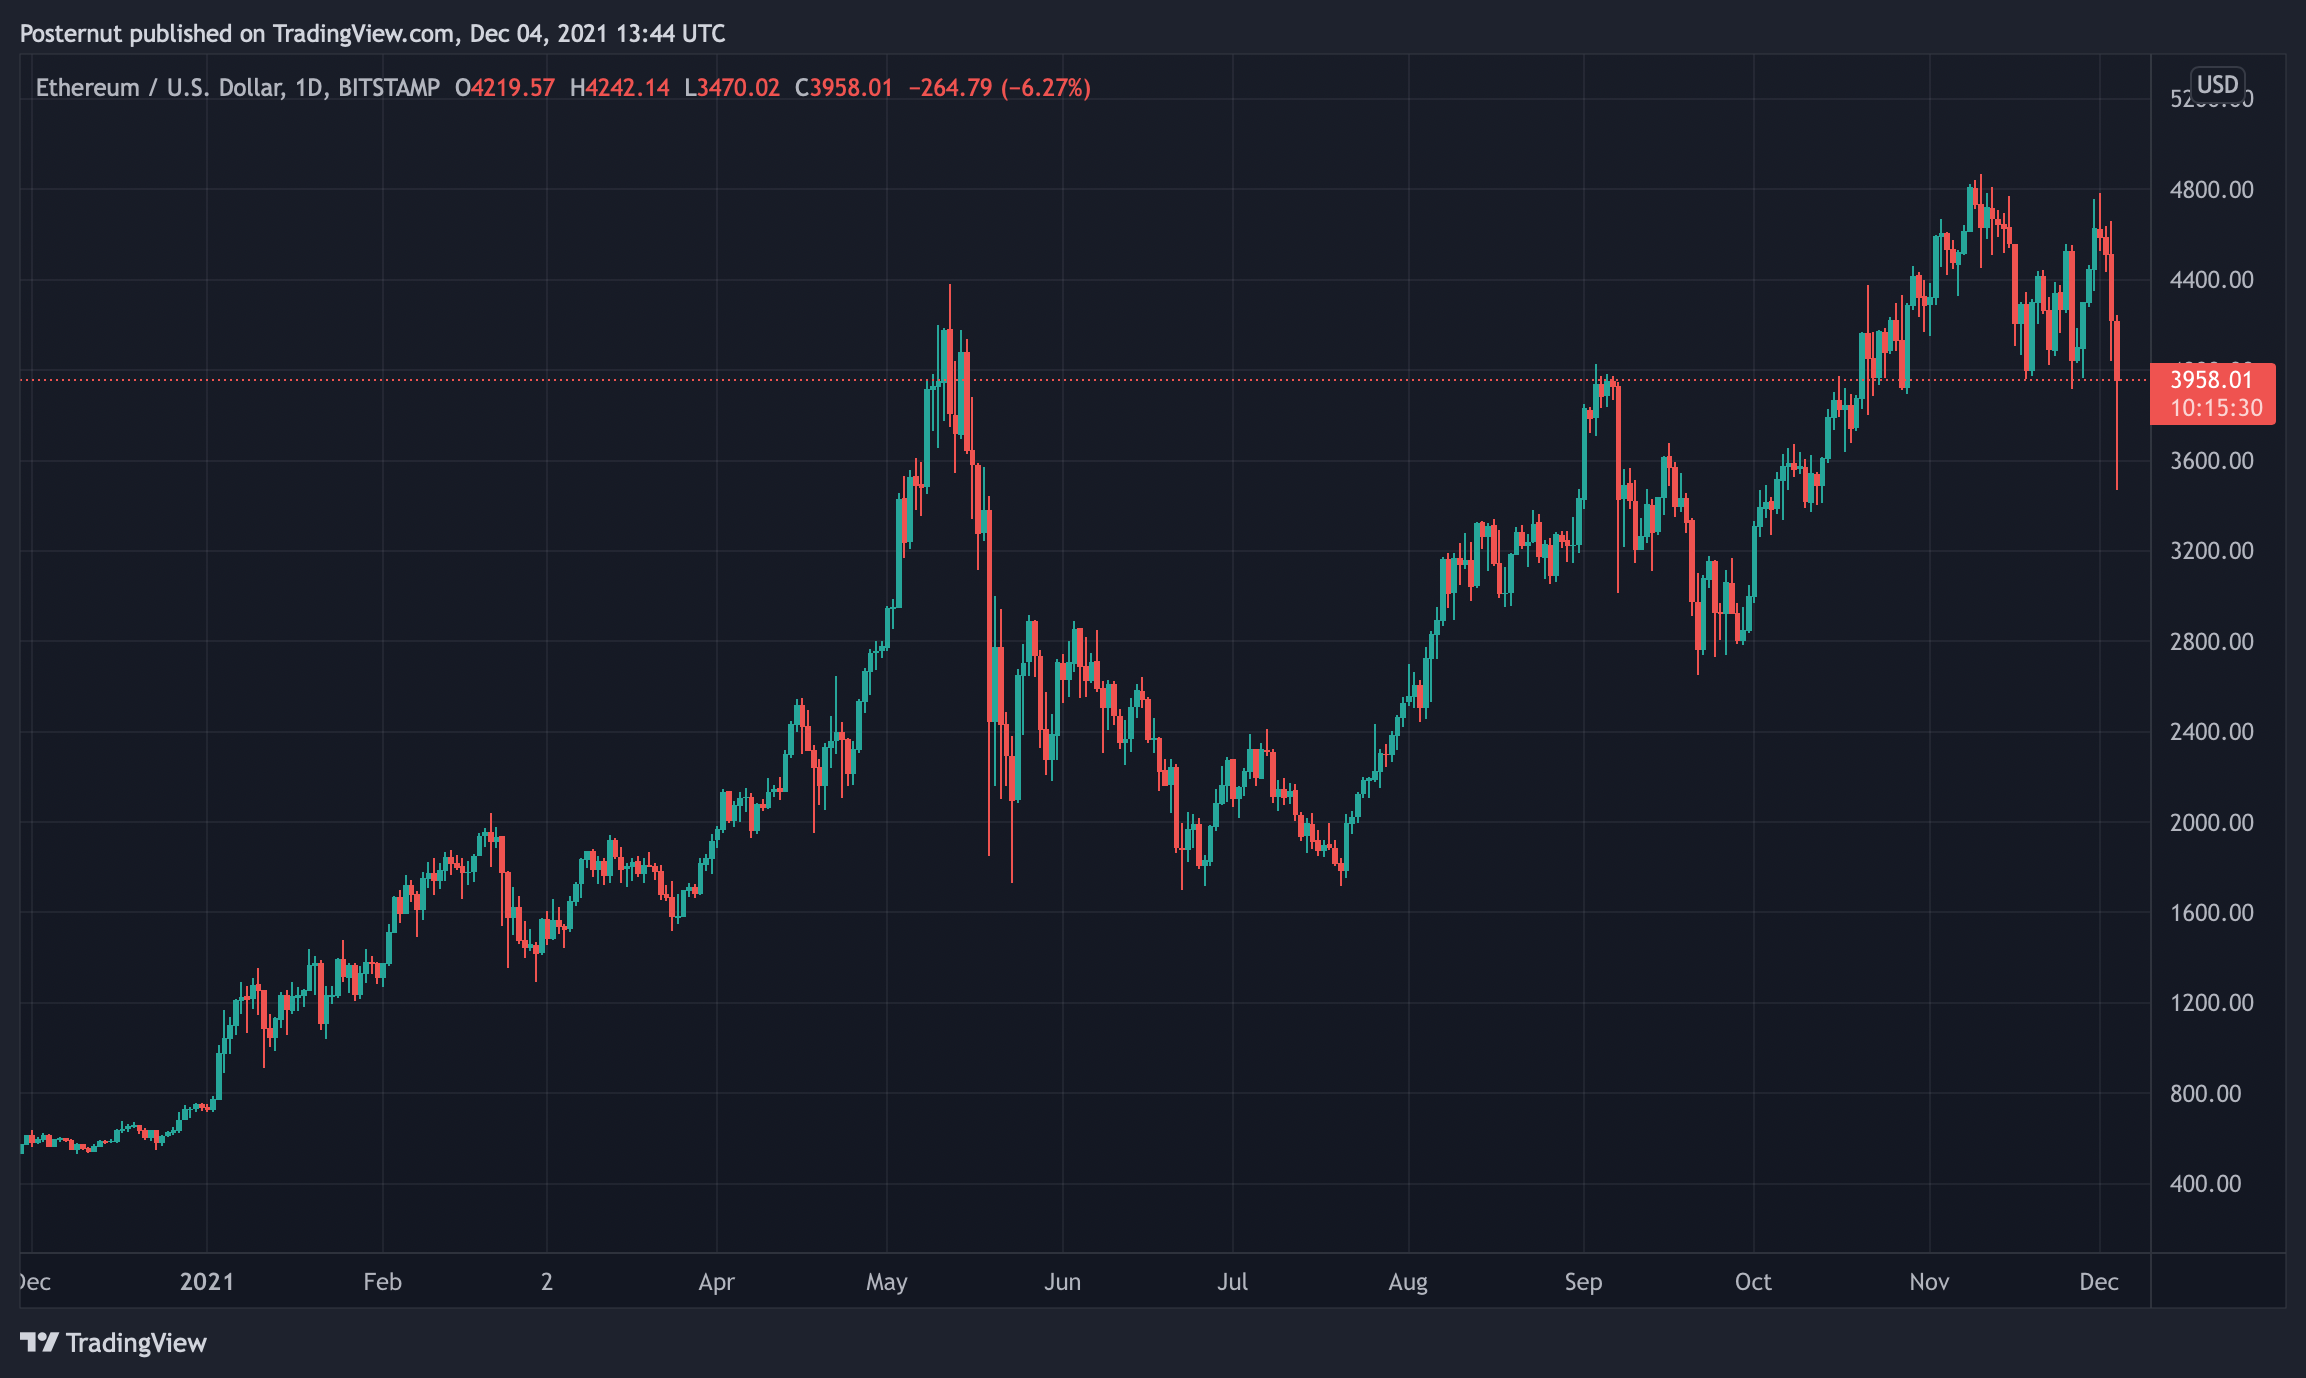 La crypto-économie perd des milliards dans le ralentissement du marché, le prix du Bitcoin chute de plus de 25% en 30 jours